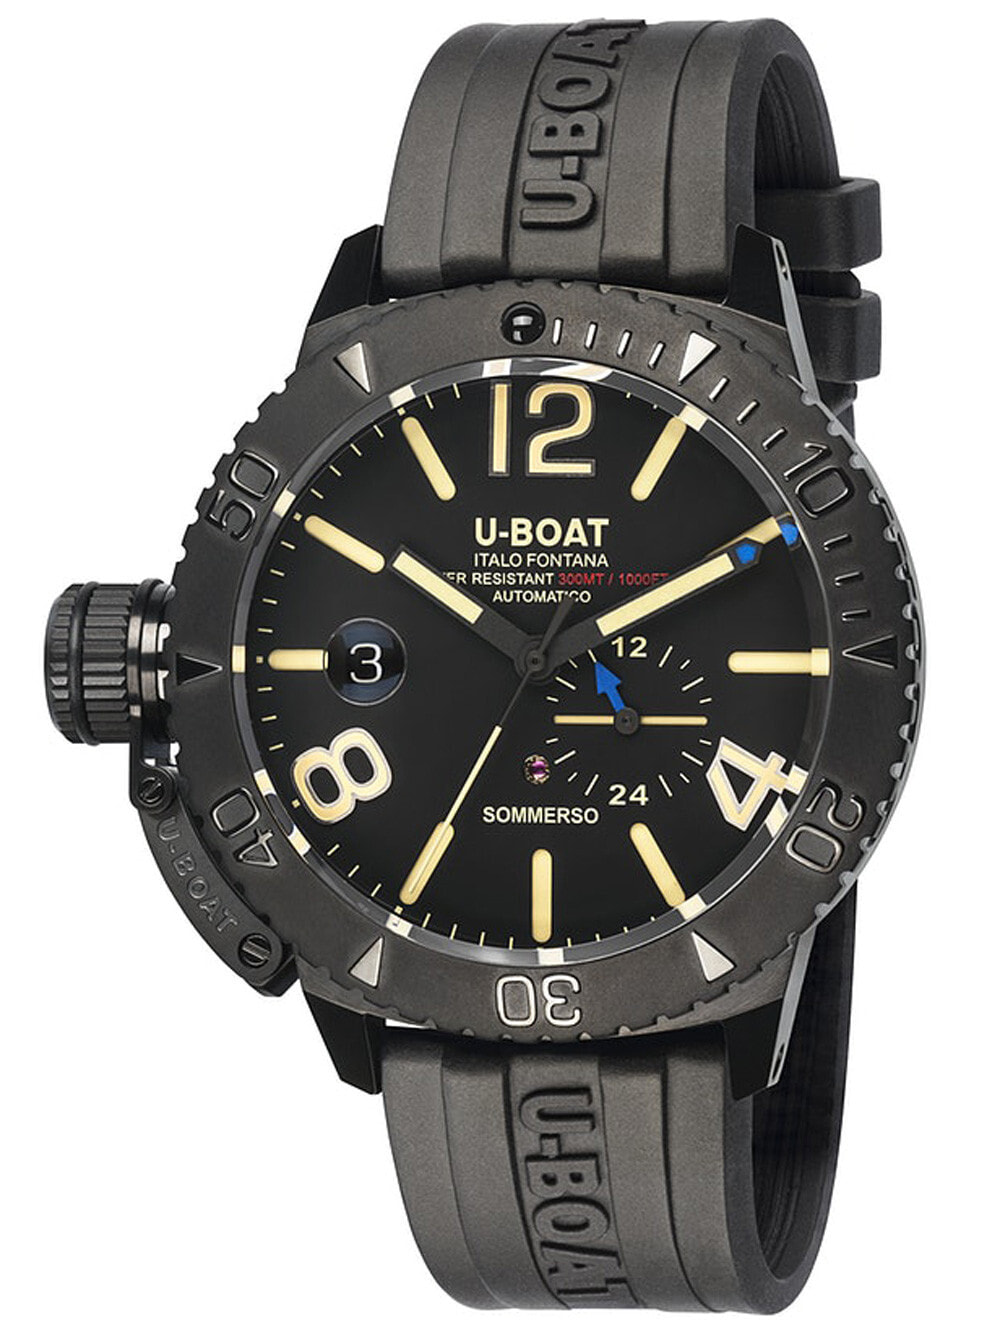 Мужские наручные часы с черным силиконовым ремешком U-Boat 9015 Sommerso Automatic 46mm 30ATM